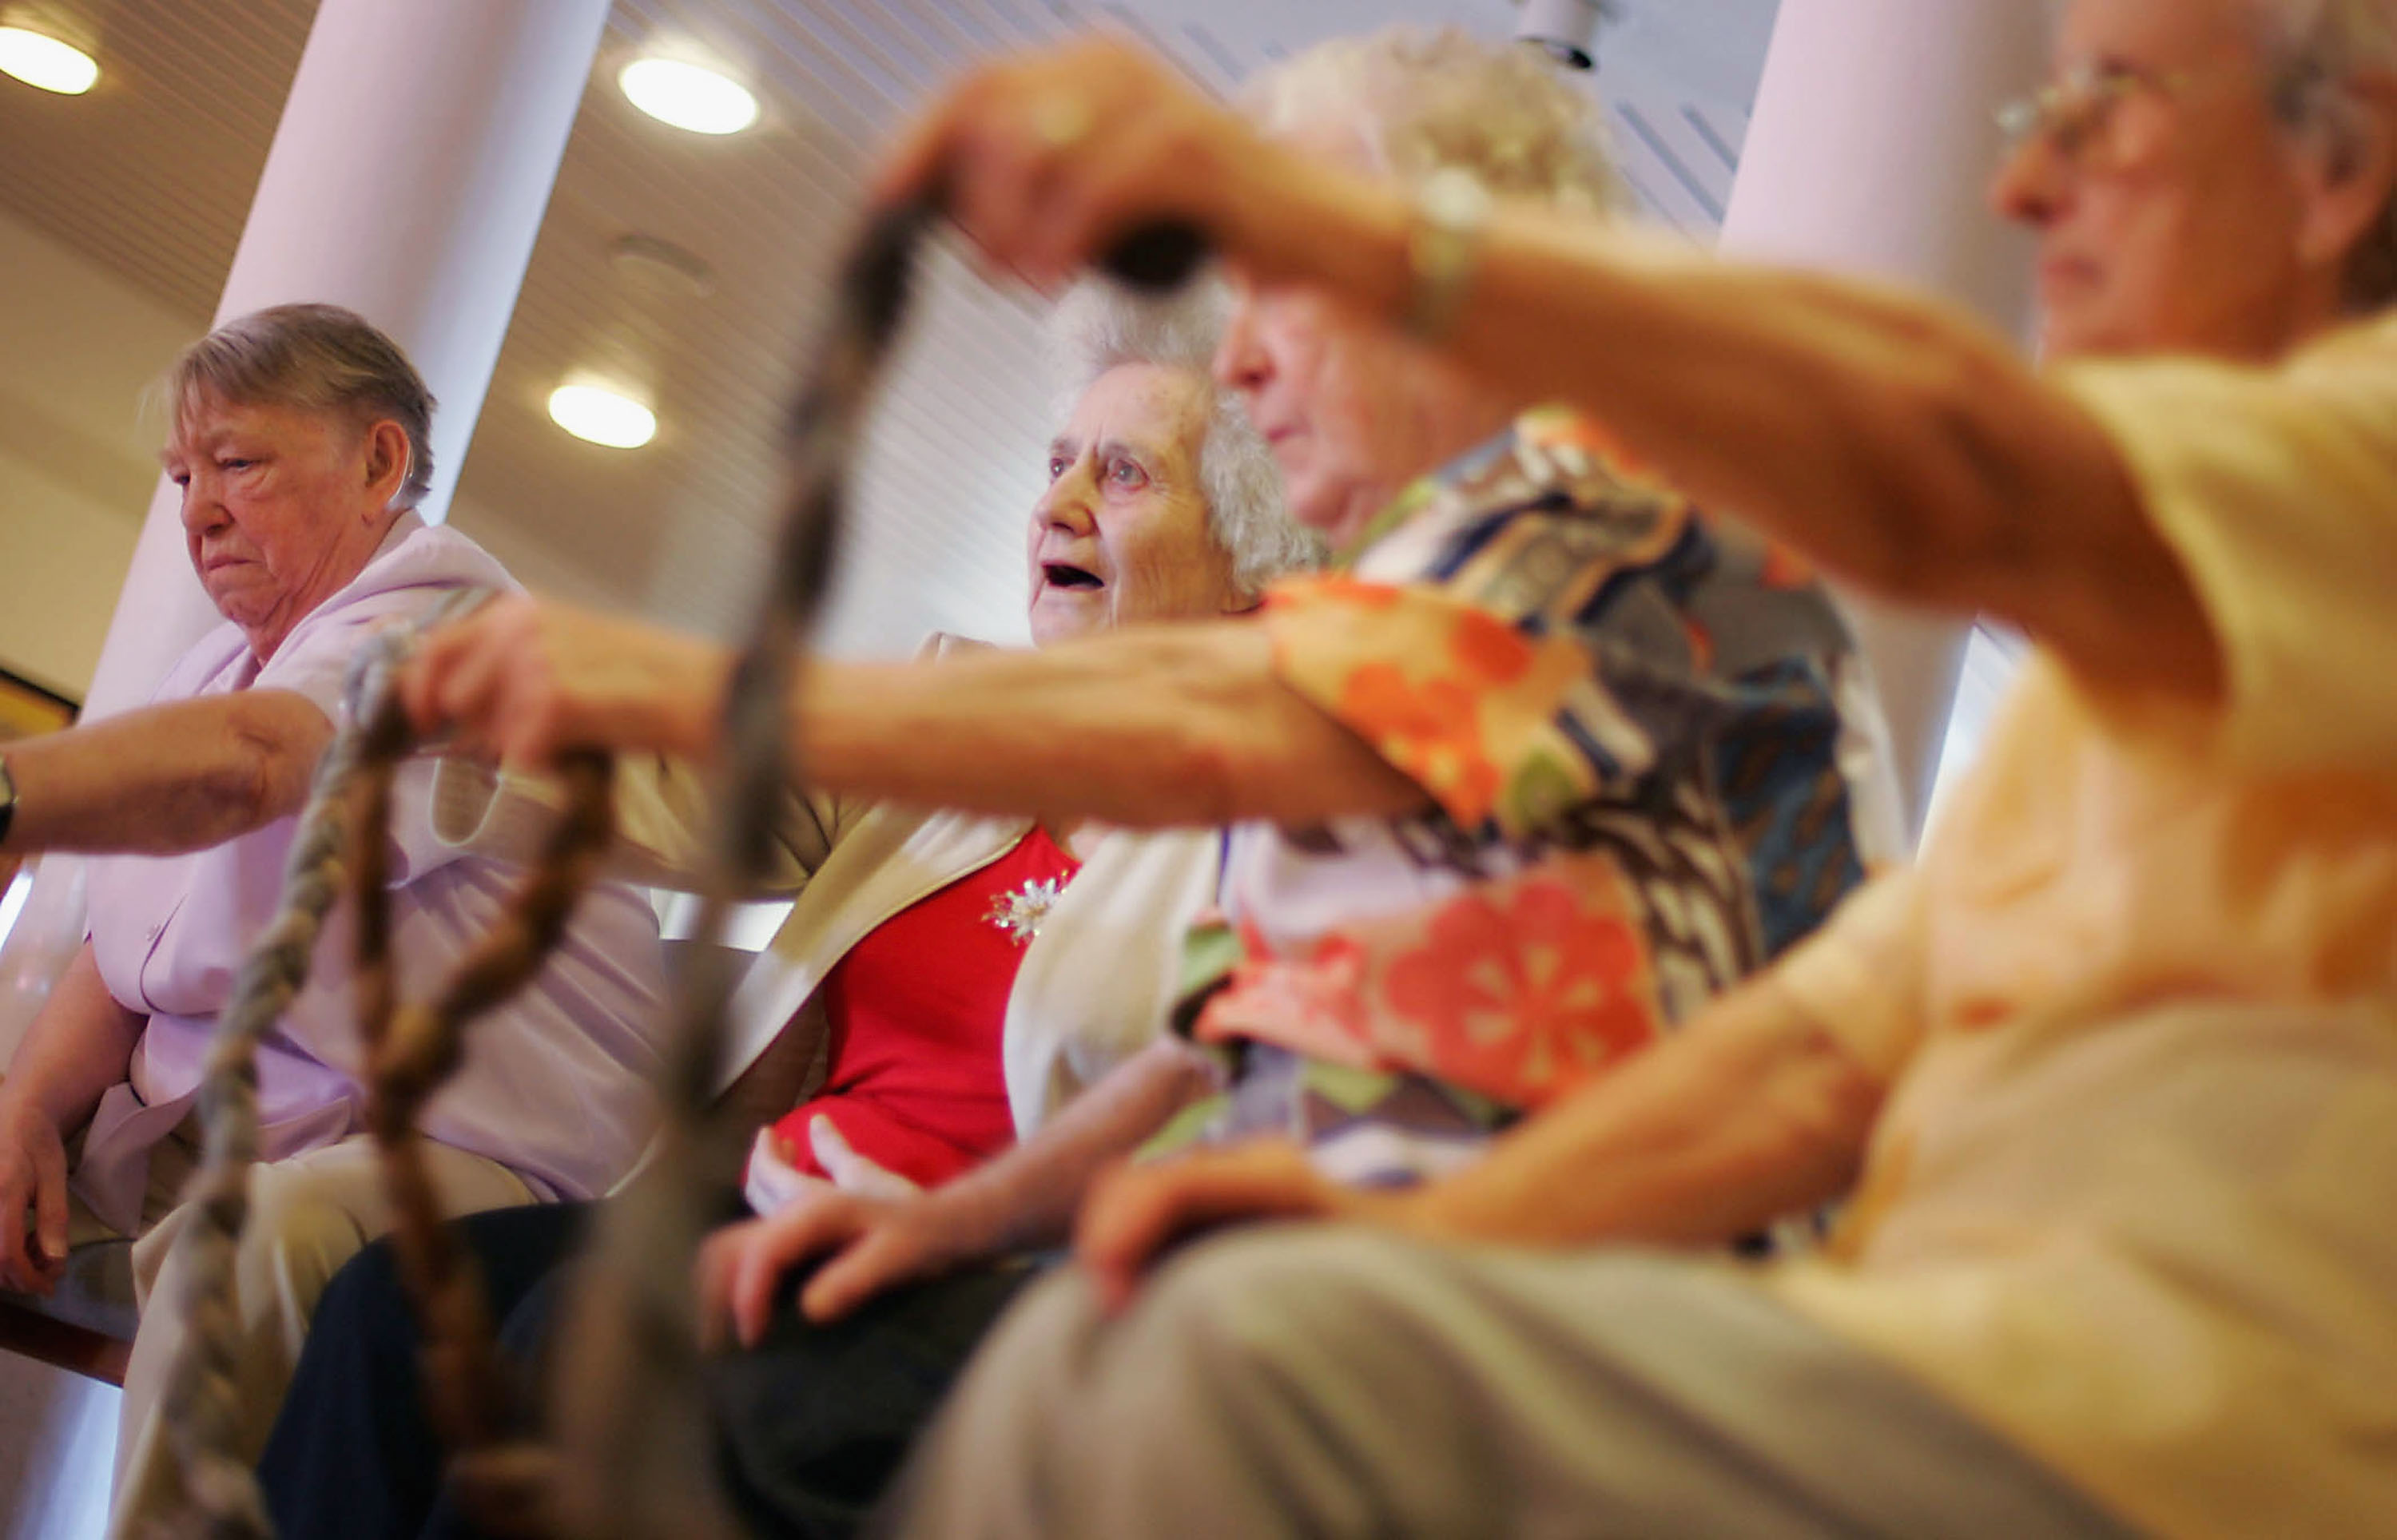 Ein paar Ergebnisse – und viele offene Fragen zur künftigen Rente